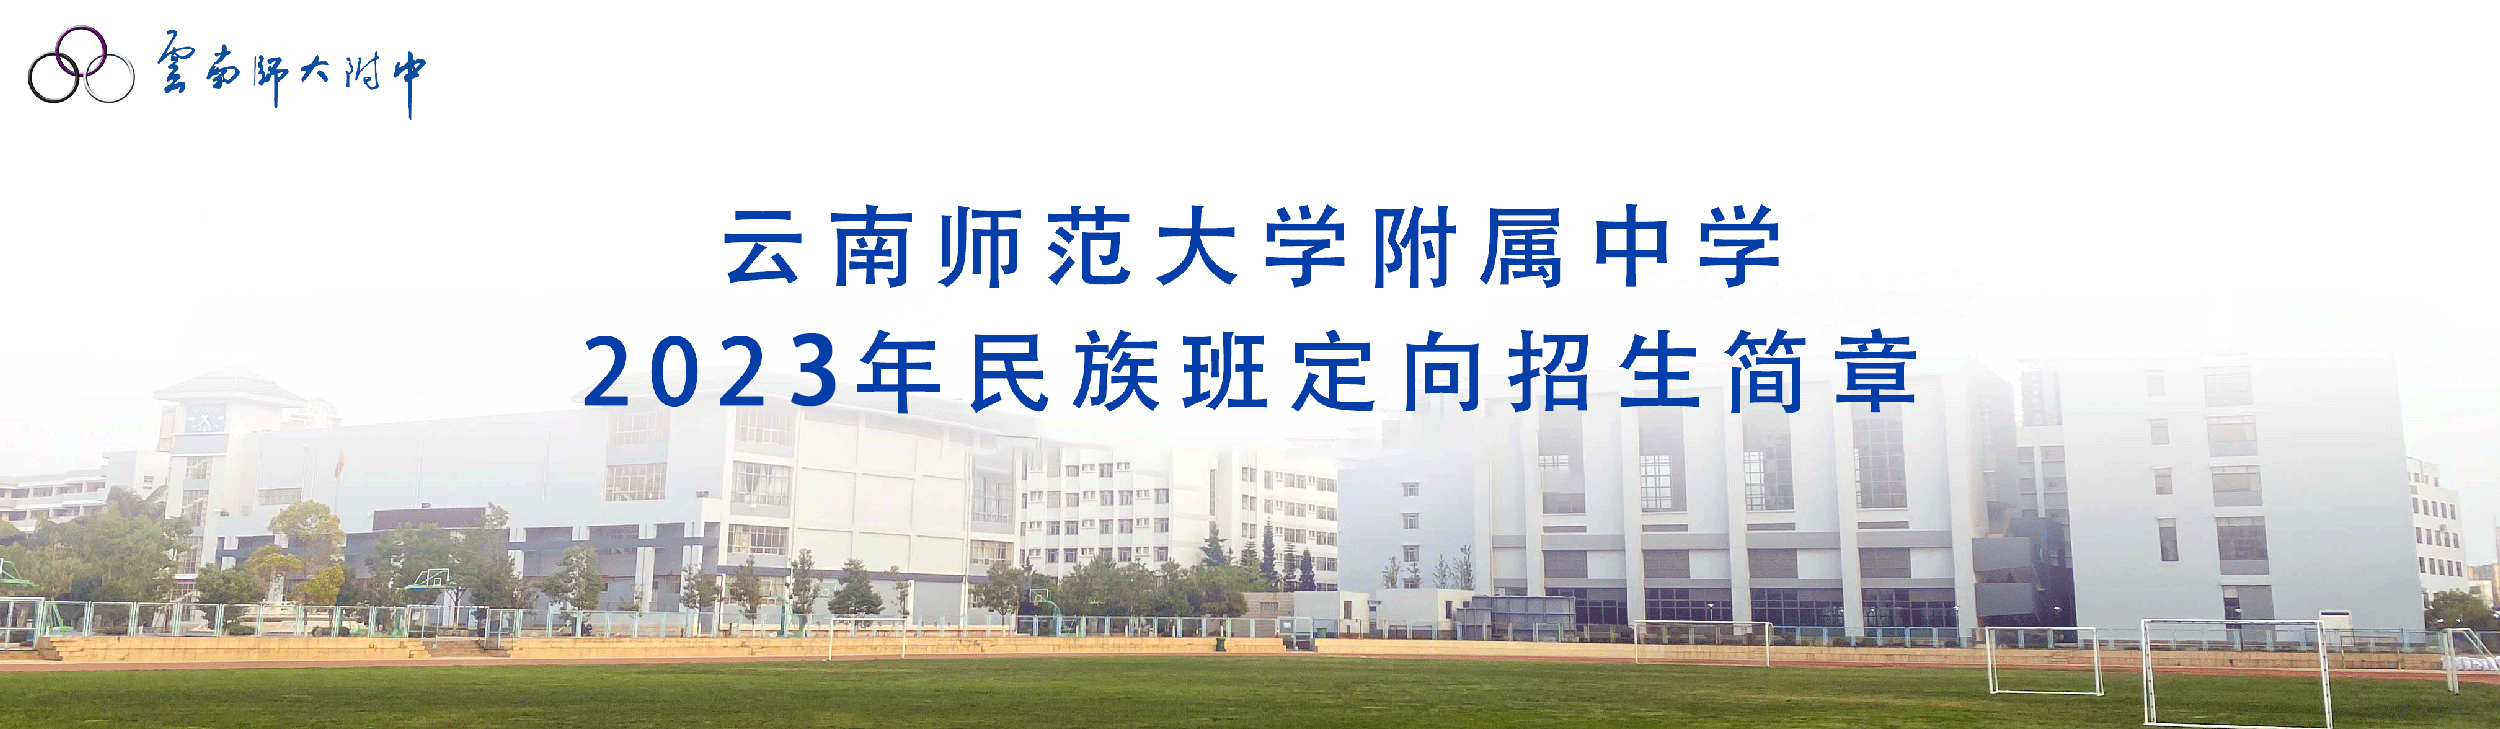 云南师范大学附属中学2023年民族班定向招生简章